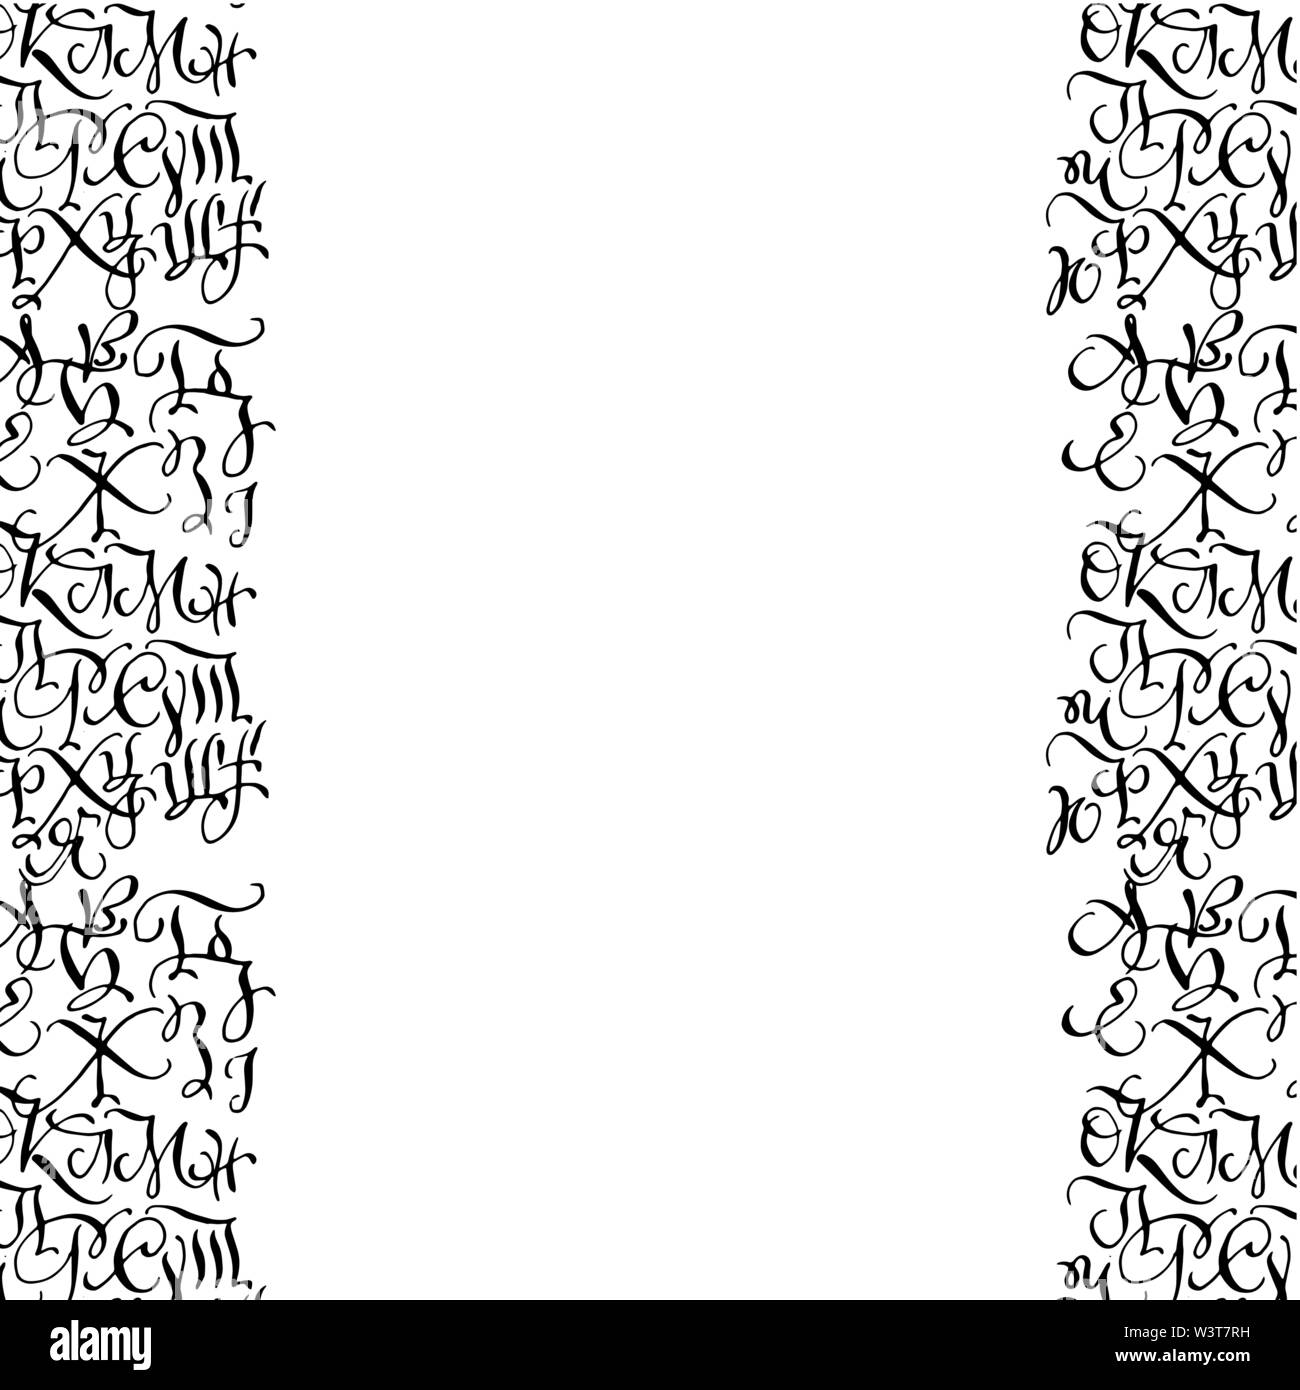 Negro dibujado a mano de estilo árabe caligrafía de alta calidad de las fronteras con las letras del alfabeto nativo ucraniano en scoropys estilo caligráfico. Aislado sobre fondo blanco. Ilustración del Vector